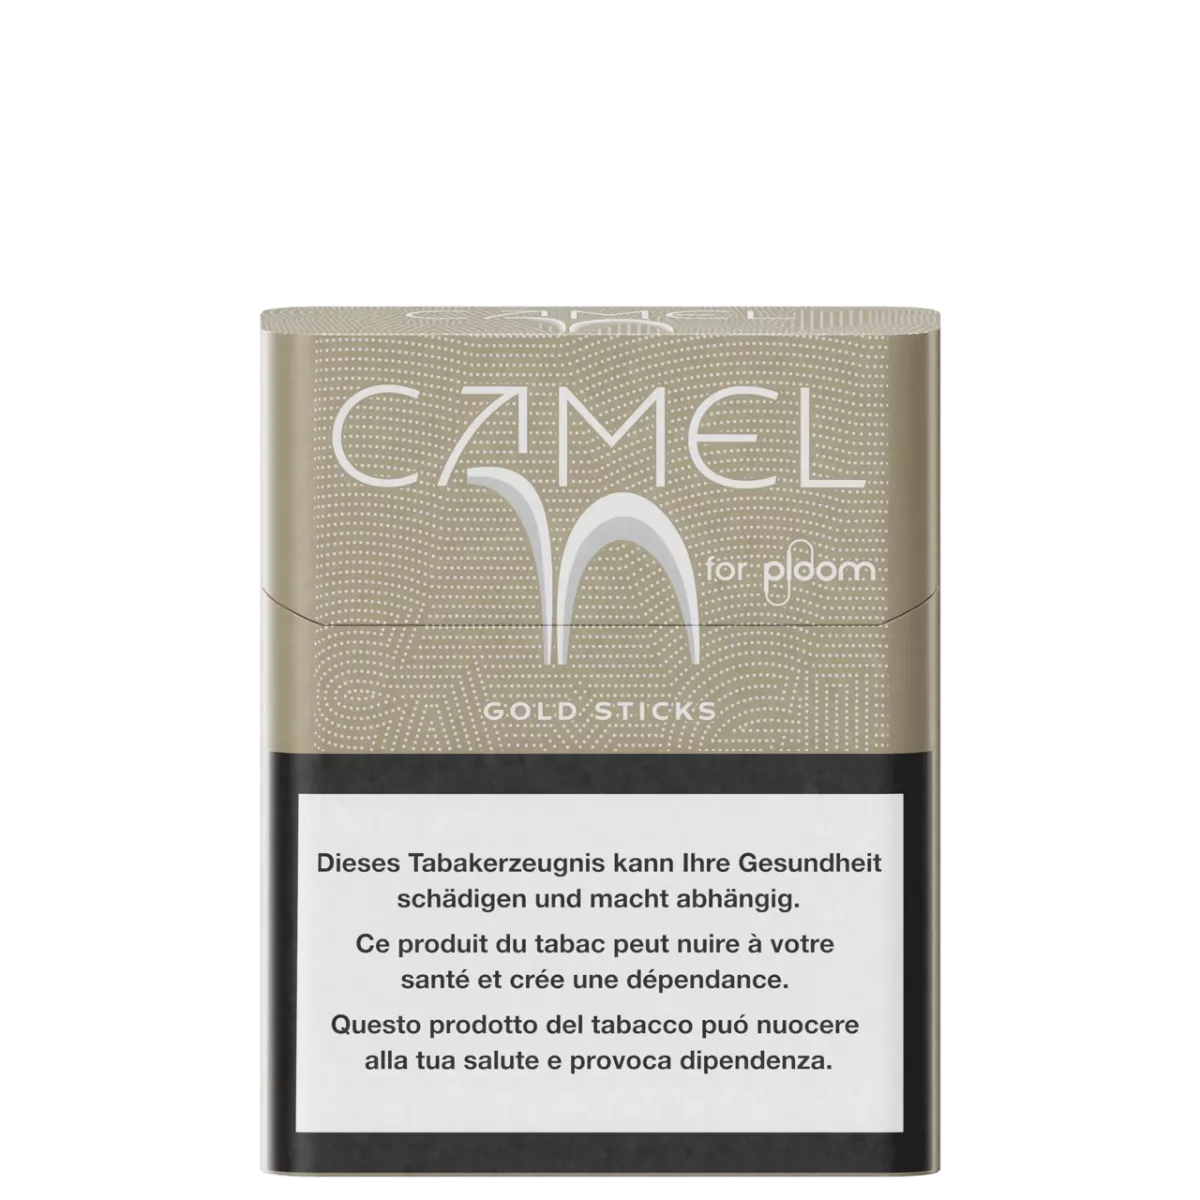 Camel Gold pack 20 sticks
